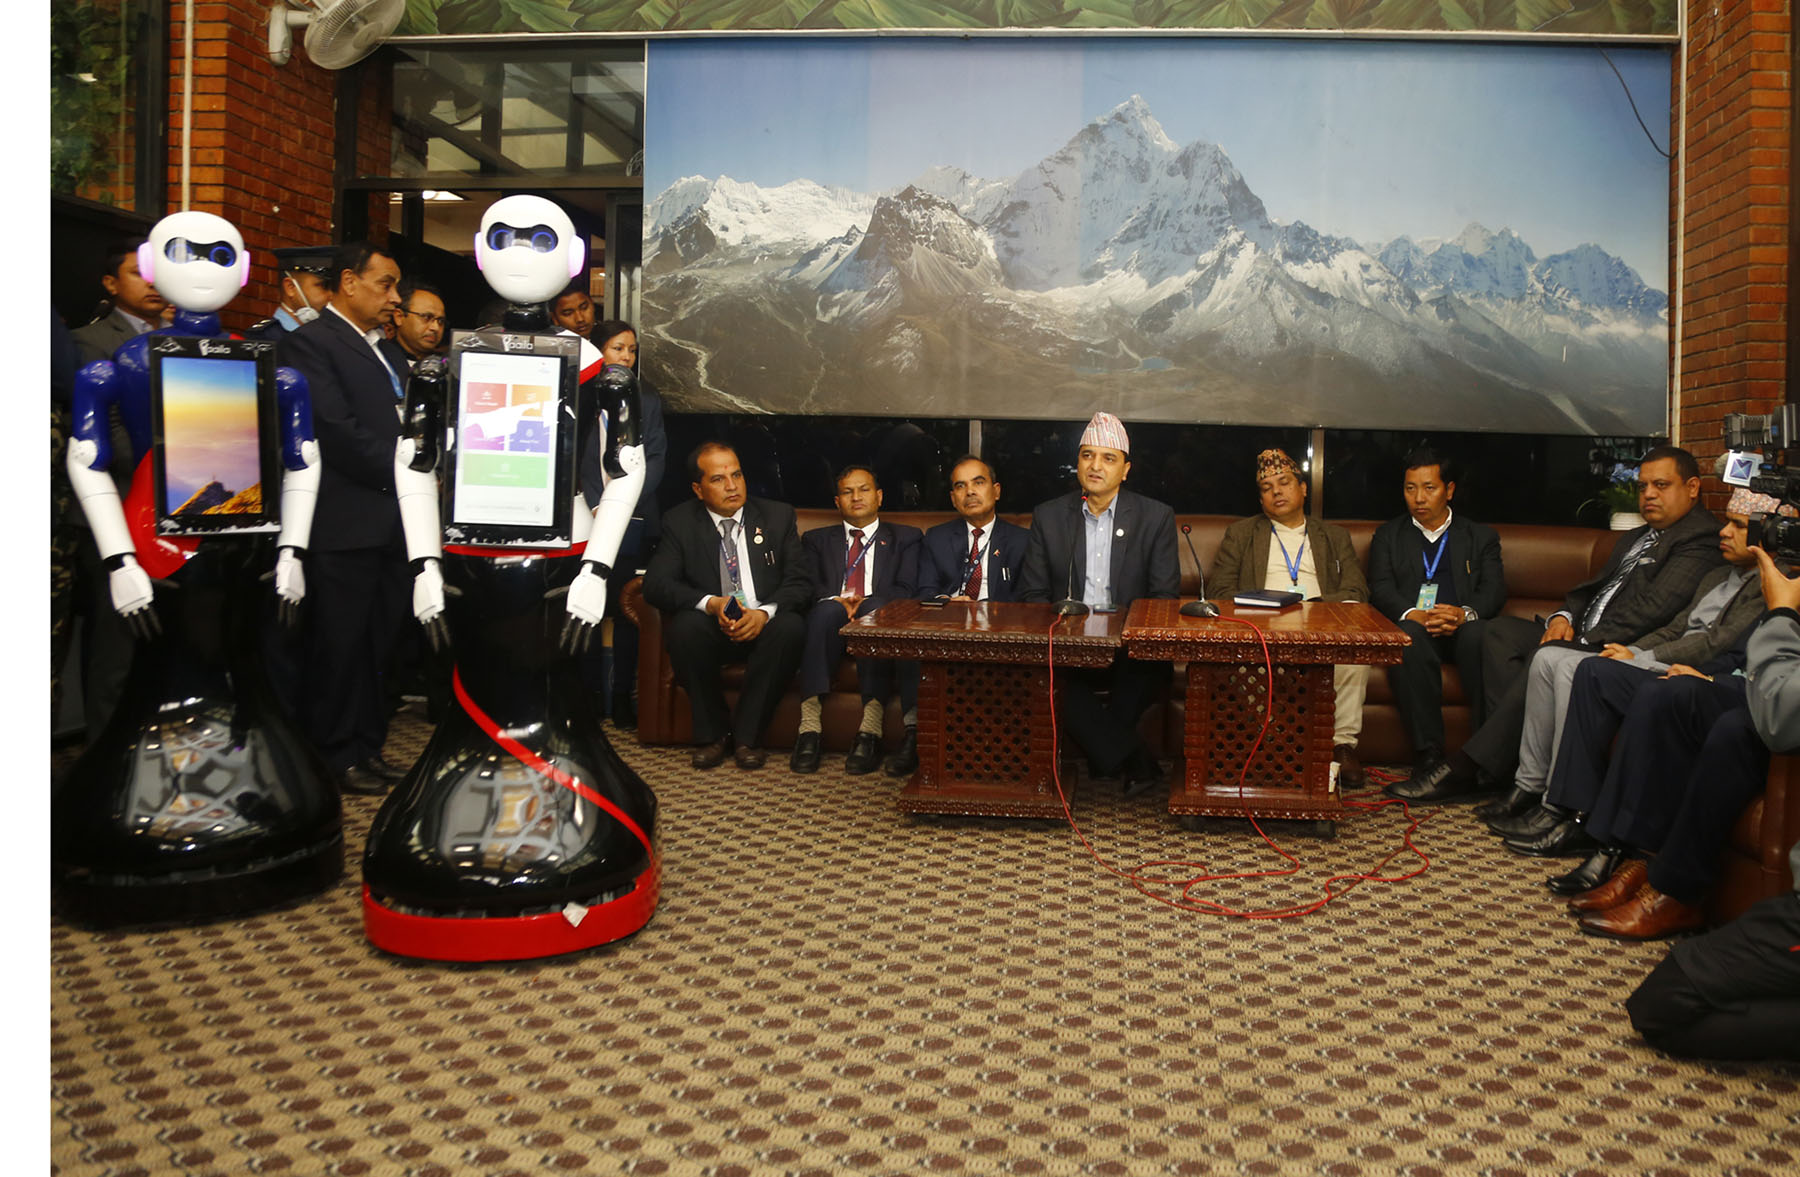 त्रिभुवन विमानस्थलमा यात्रुहरुलाई रोबोटले स्वागत गर्दै